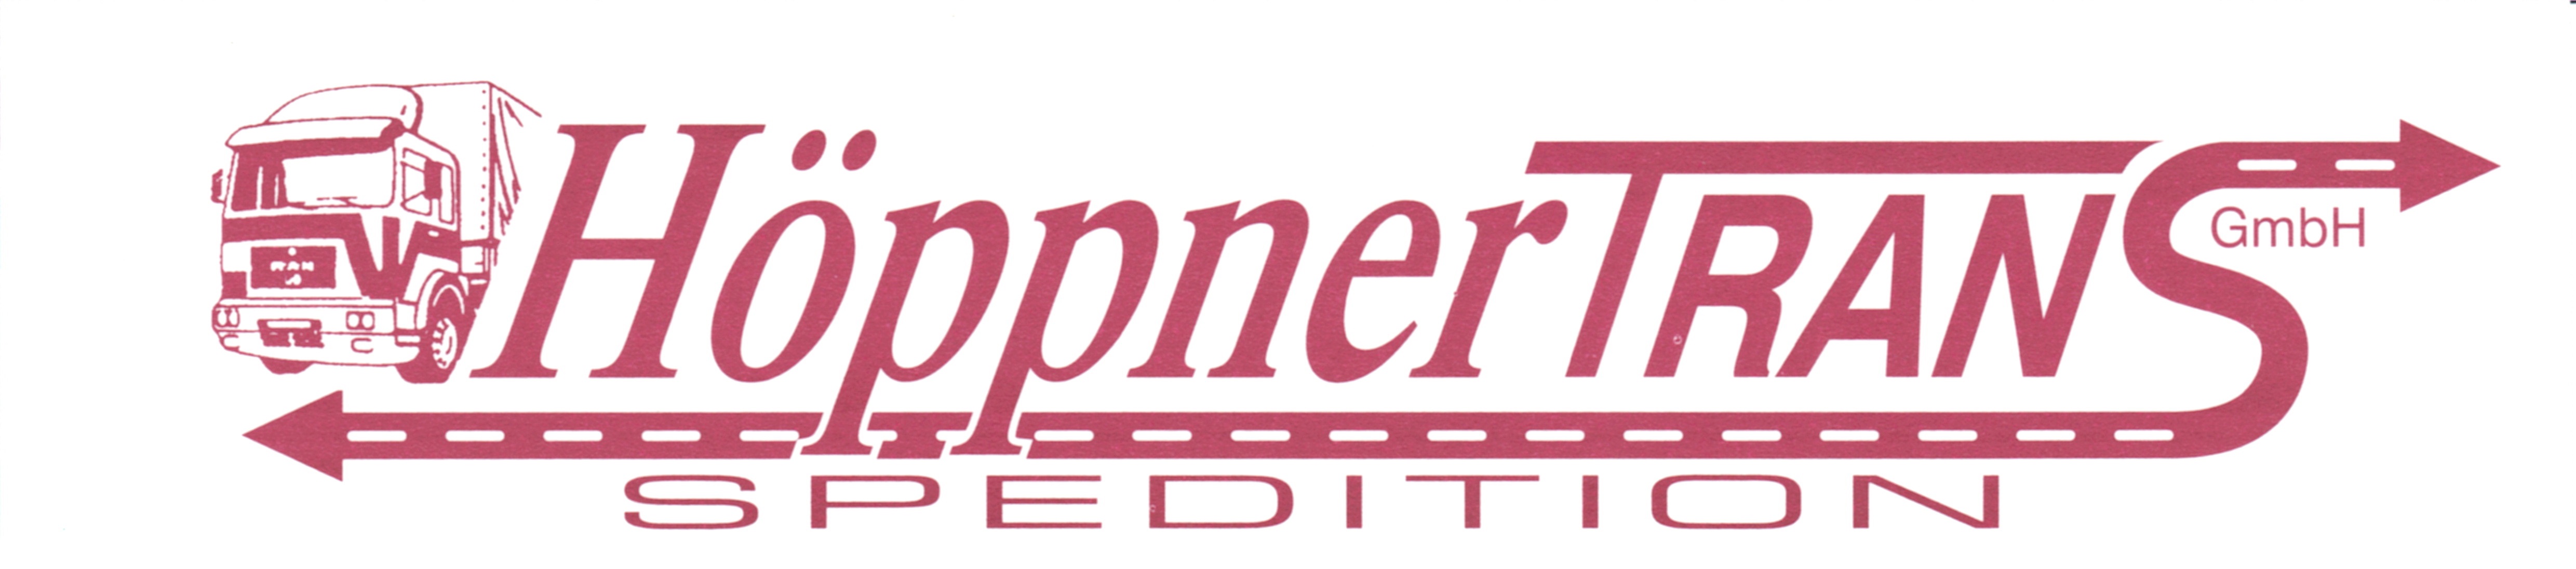 Höppner Trans-GmbH-Spedition